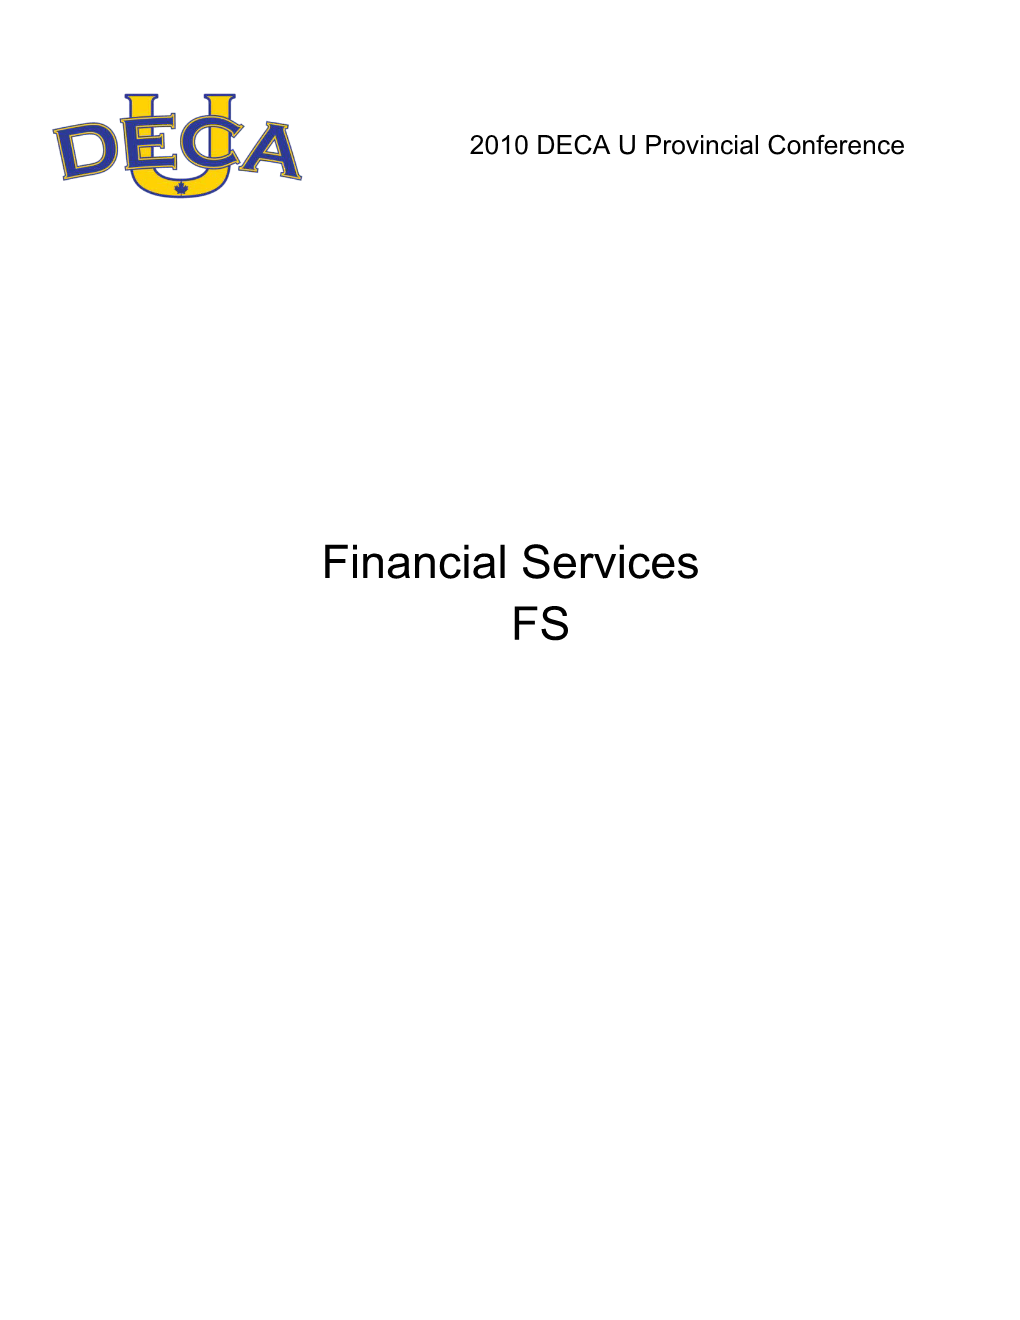 2010 DECA U Provincial Conferencefinancial Services